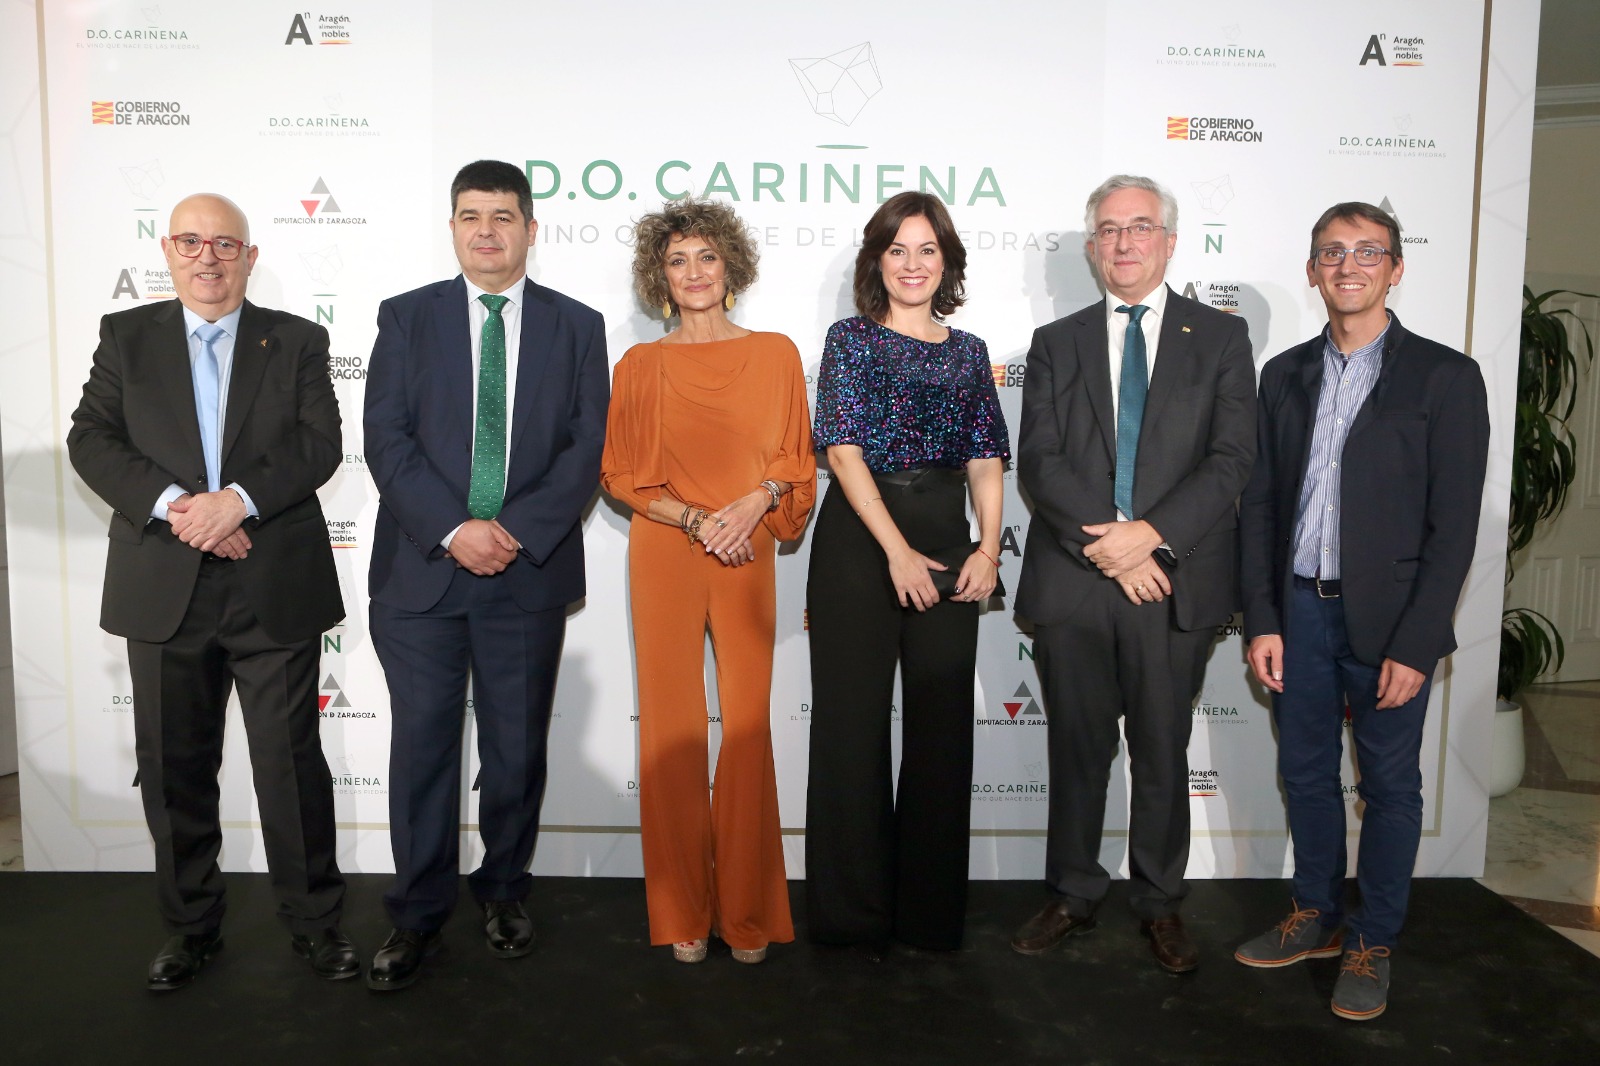 Celebración del 90º aniversario de la DO Cariñena en Madrid